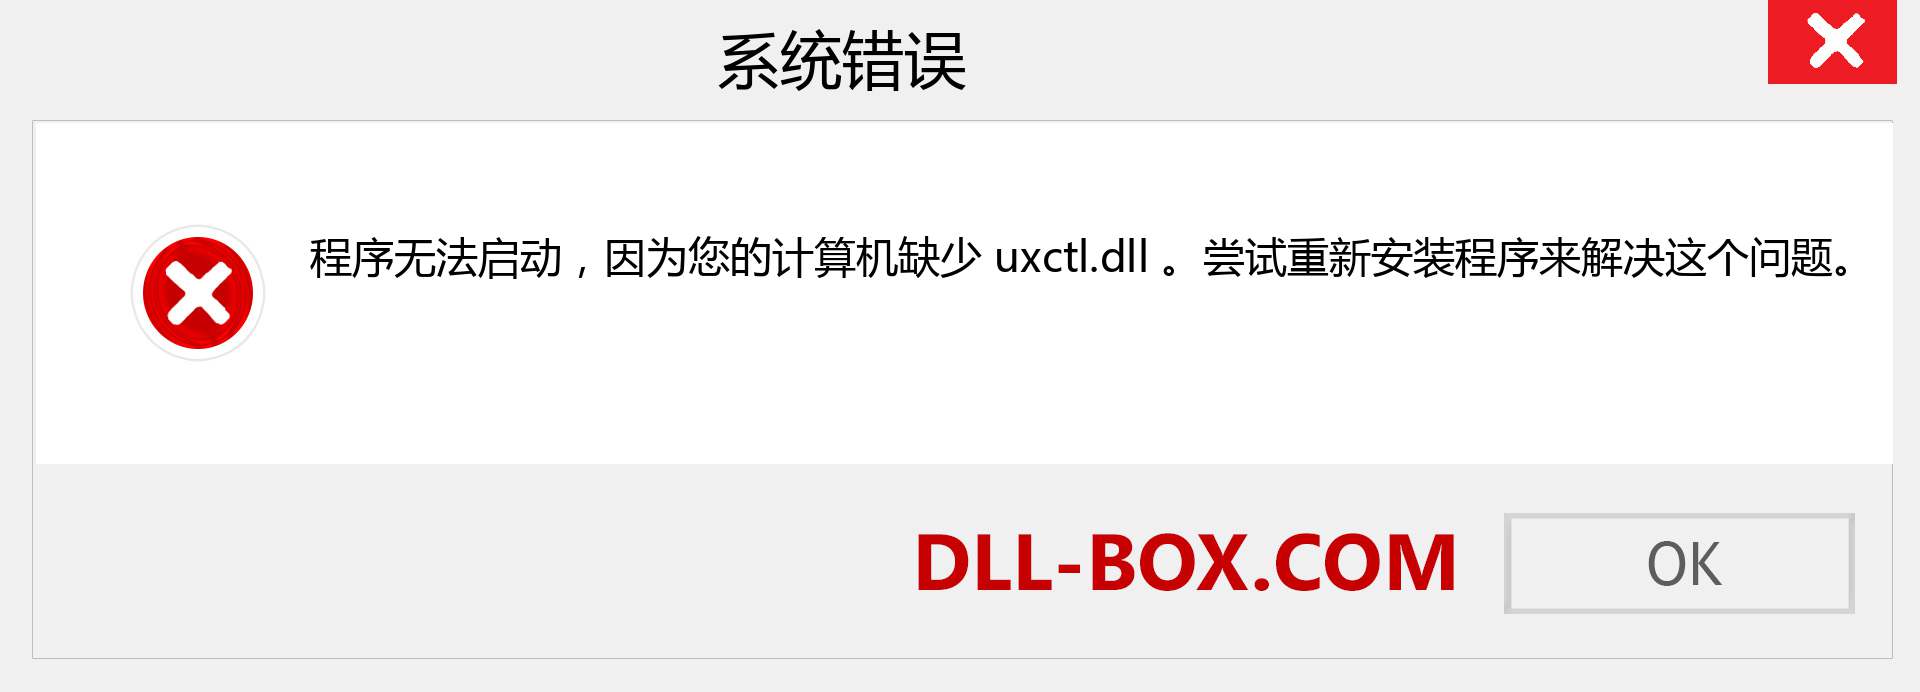 uxctl.dll 文件丢失？。 适用于 Windows 7、8、10 的下载 - 修复 Windows、照片、图像上的 uxctl dll 丢失错误